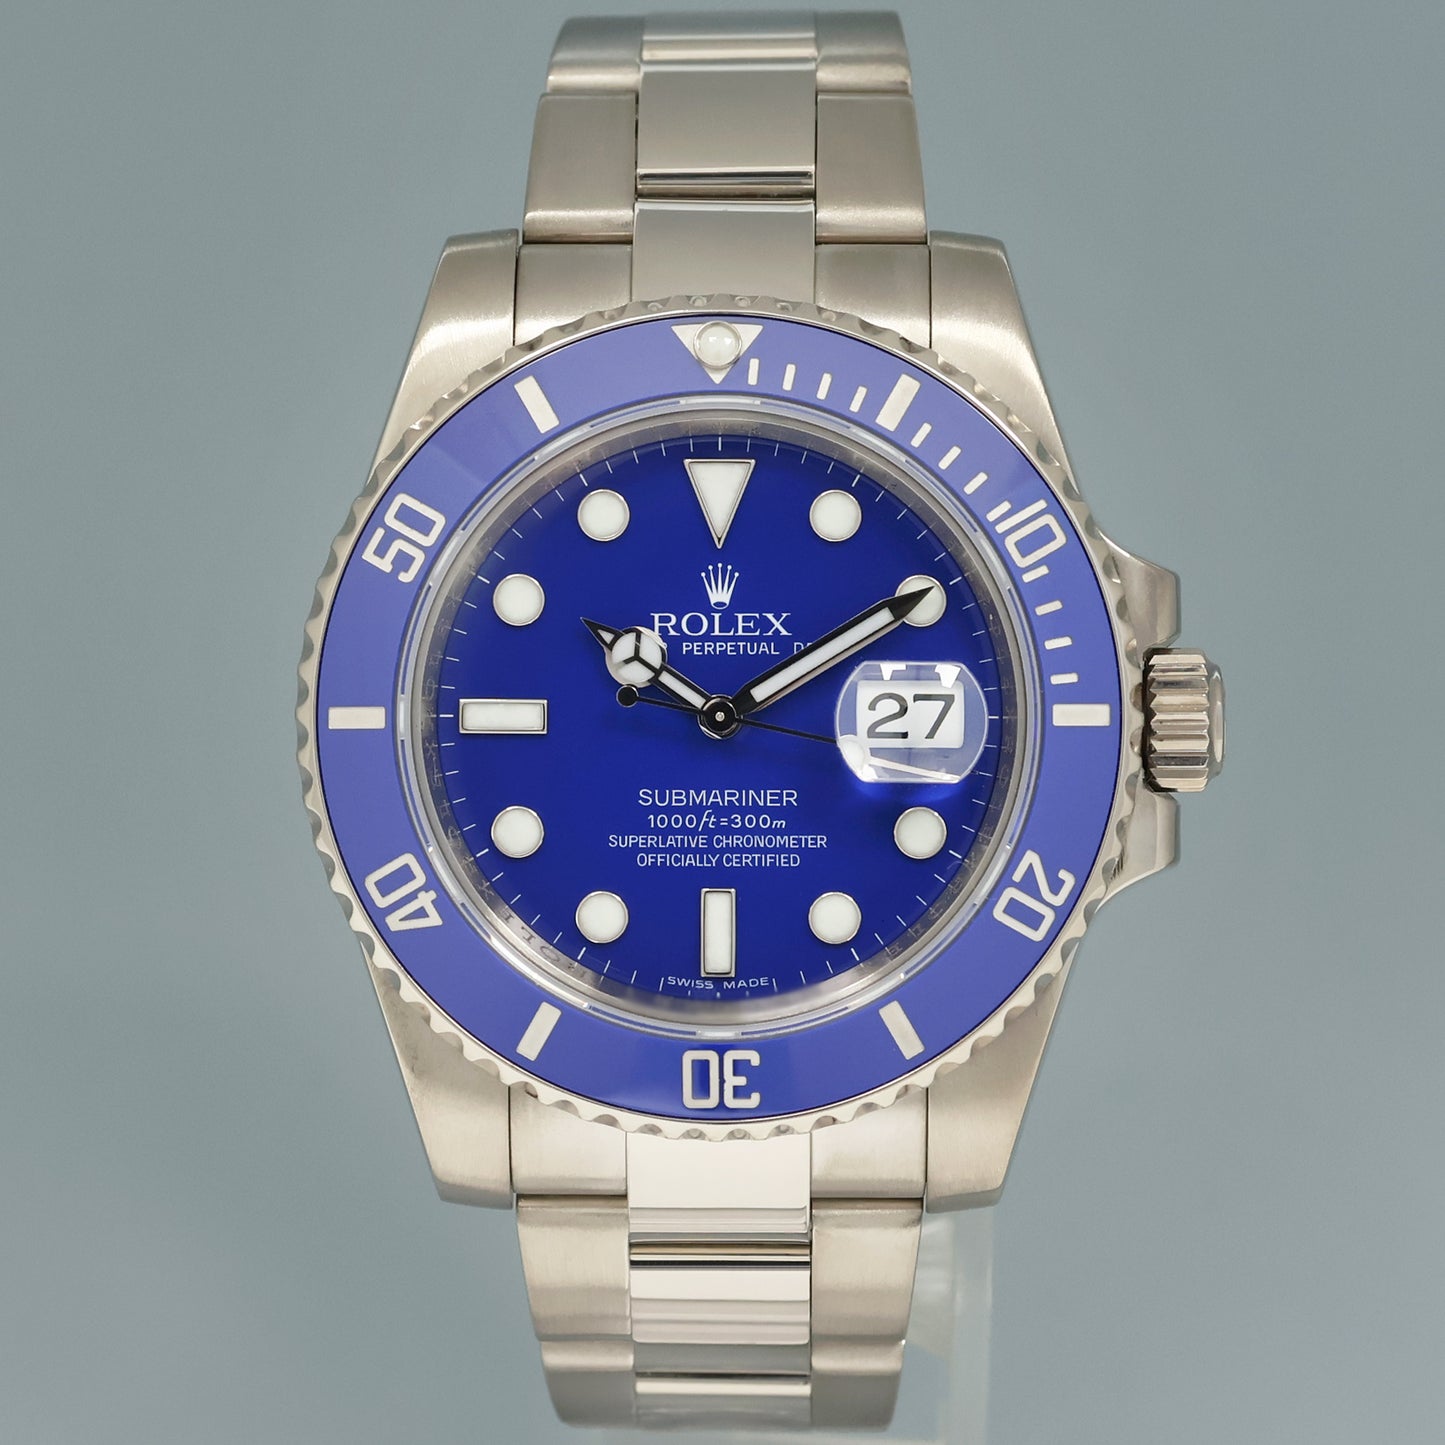 MINT Rolex Submariner Smurf 116619 White Gold Blue 40mm Ceramic Watch